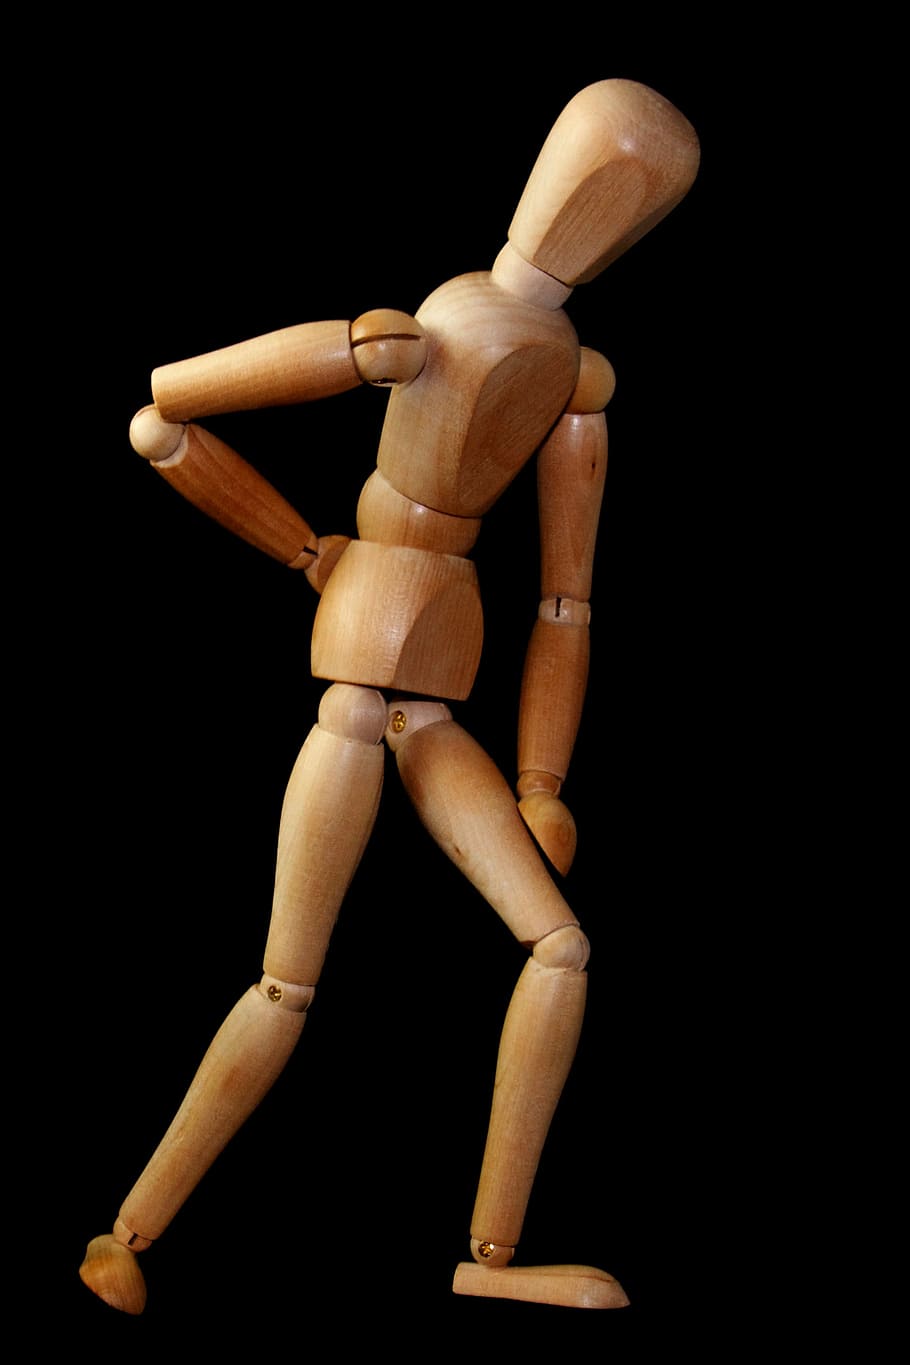 marrón, maniquí, negro, fondo, figura, hombre, soporte, dolor de espalda, ciática, dorsalgia